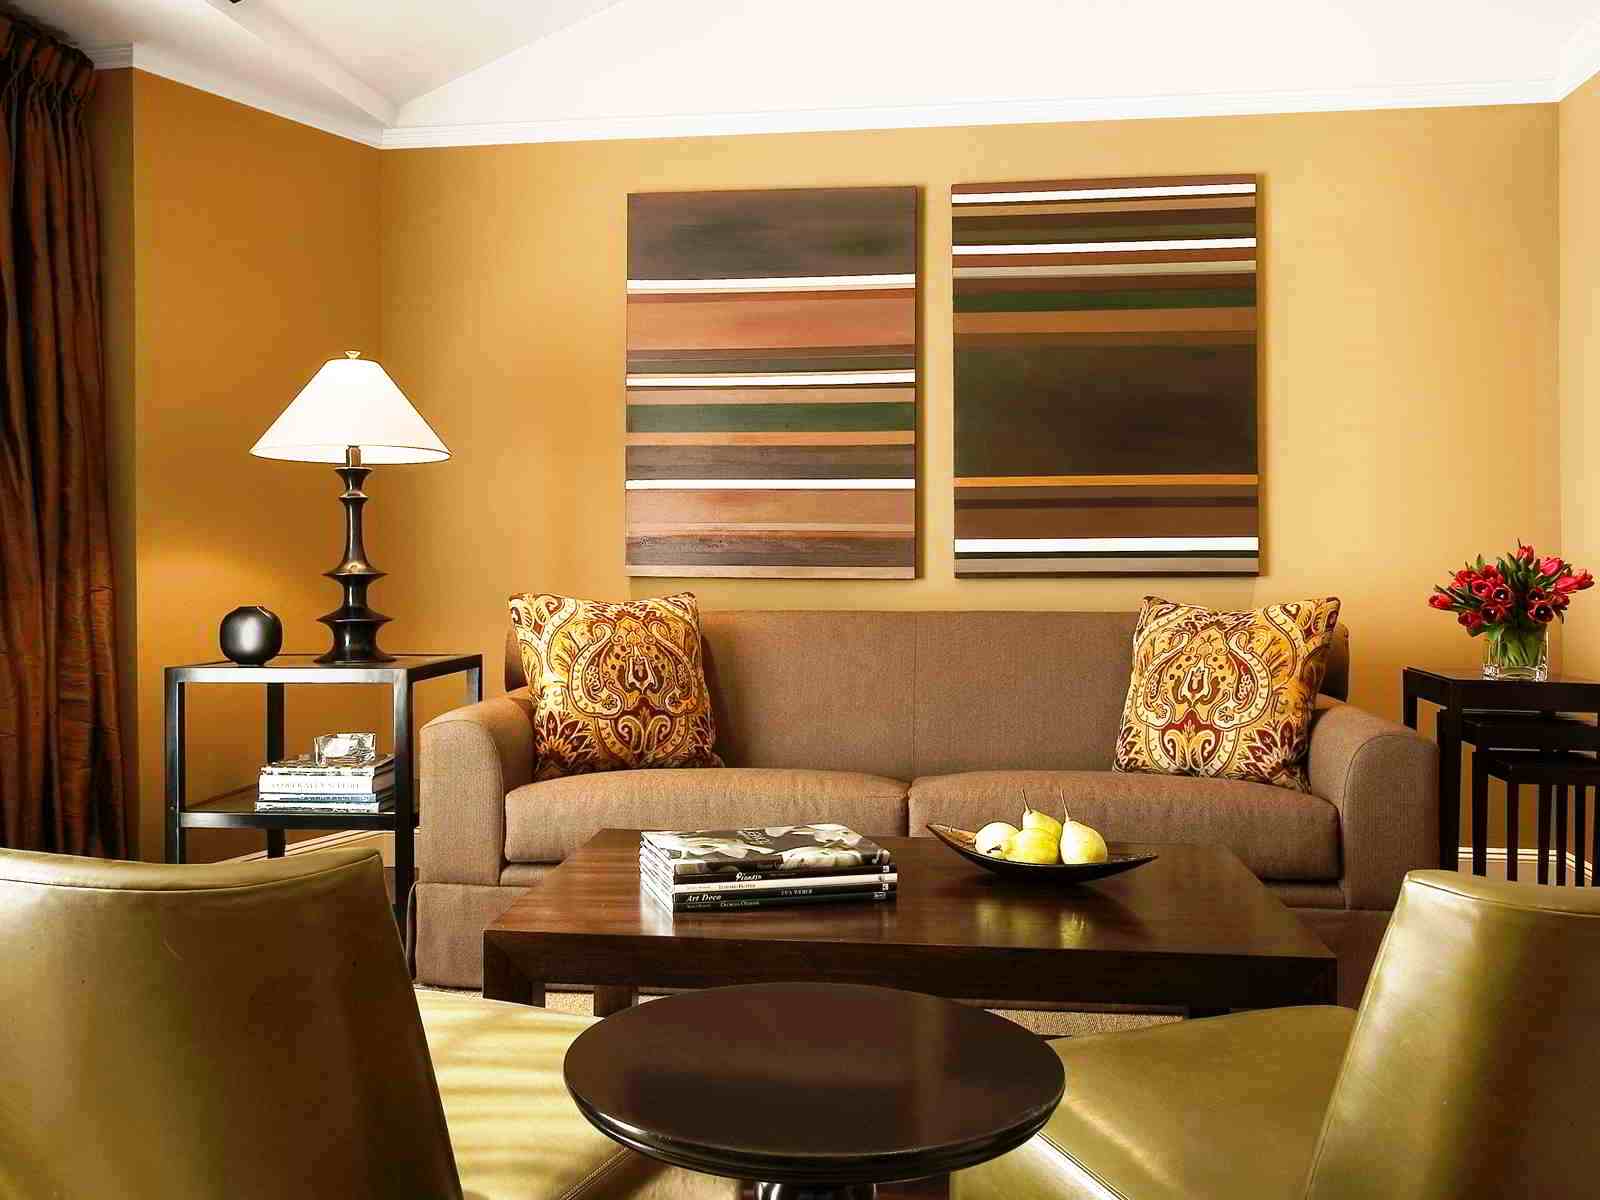 wallpaper dinding ruang tamu minimalis,living room,room,interior design,furniture,property